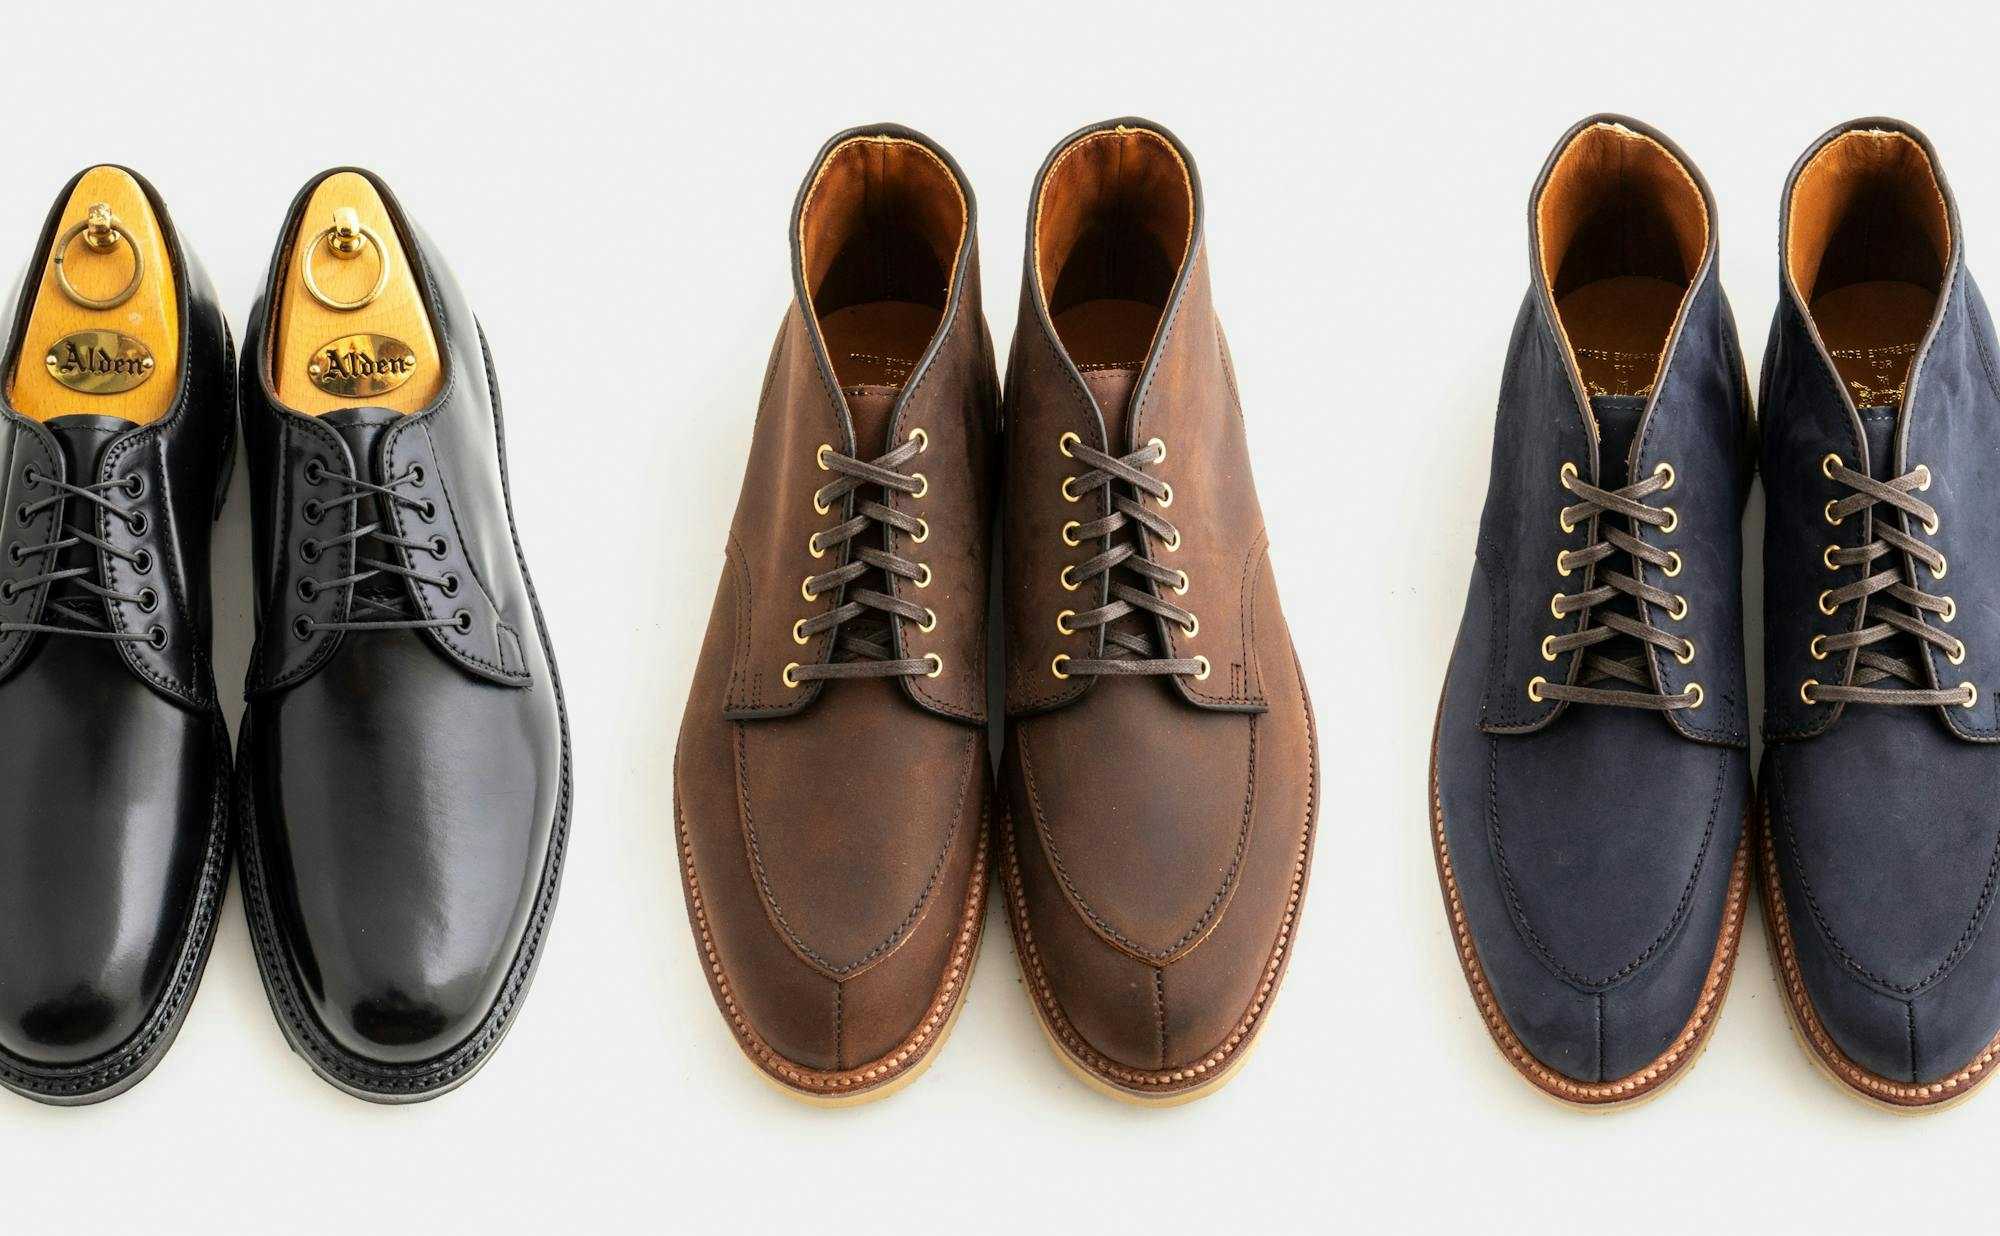 A pair of black derbys, a pair of brown chukka boots, and a pair of navy chukka boots.